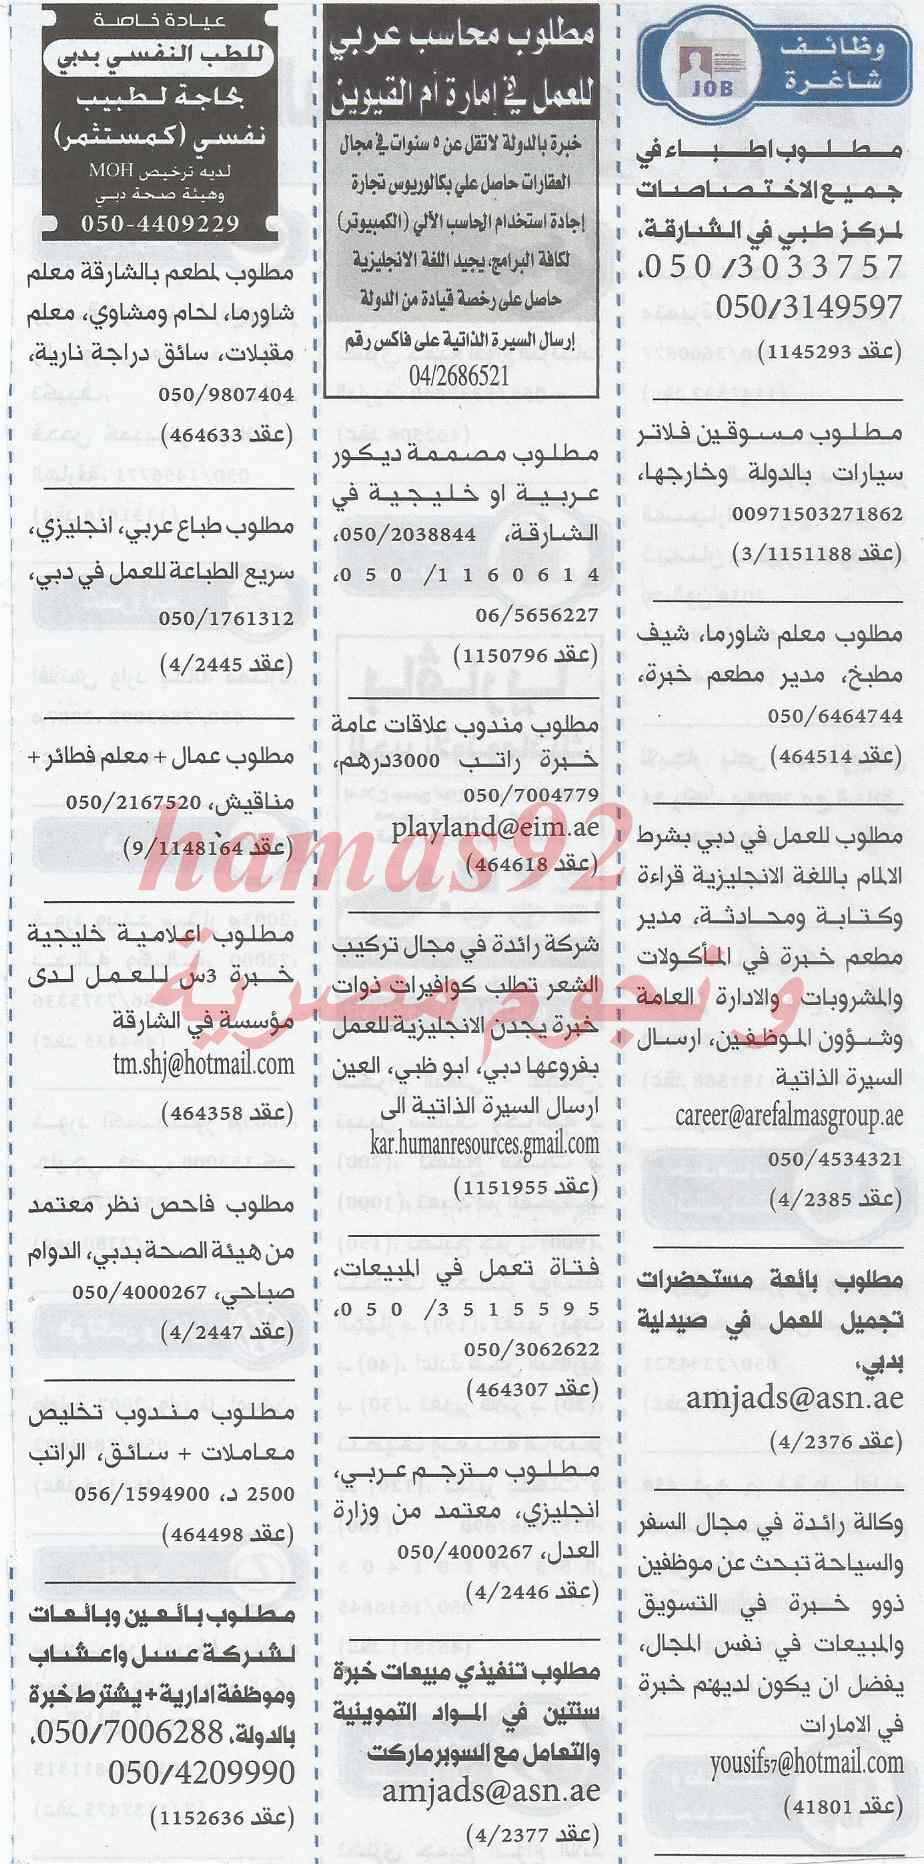 وظائف جريدة الخليج الامارات اليوم الاربعاء 5-2-2014 , وظائف خالية اليوم 5 فبراير 2014